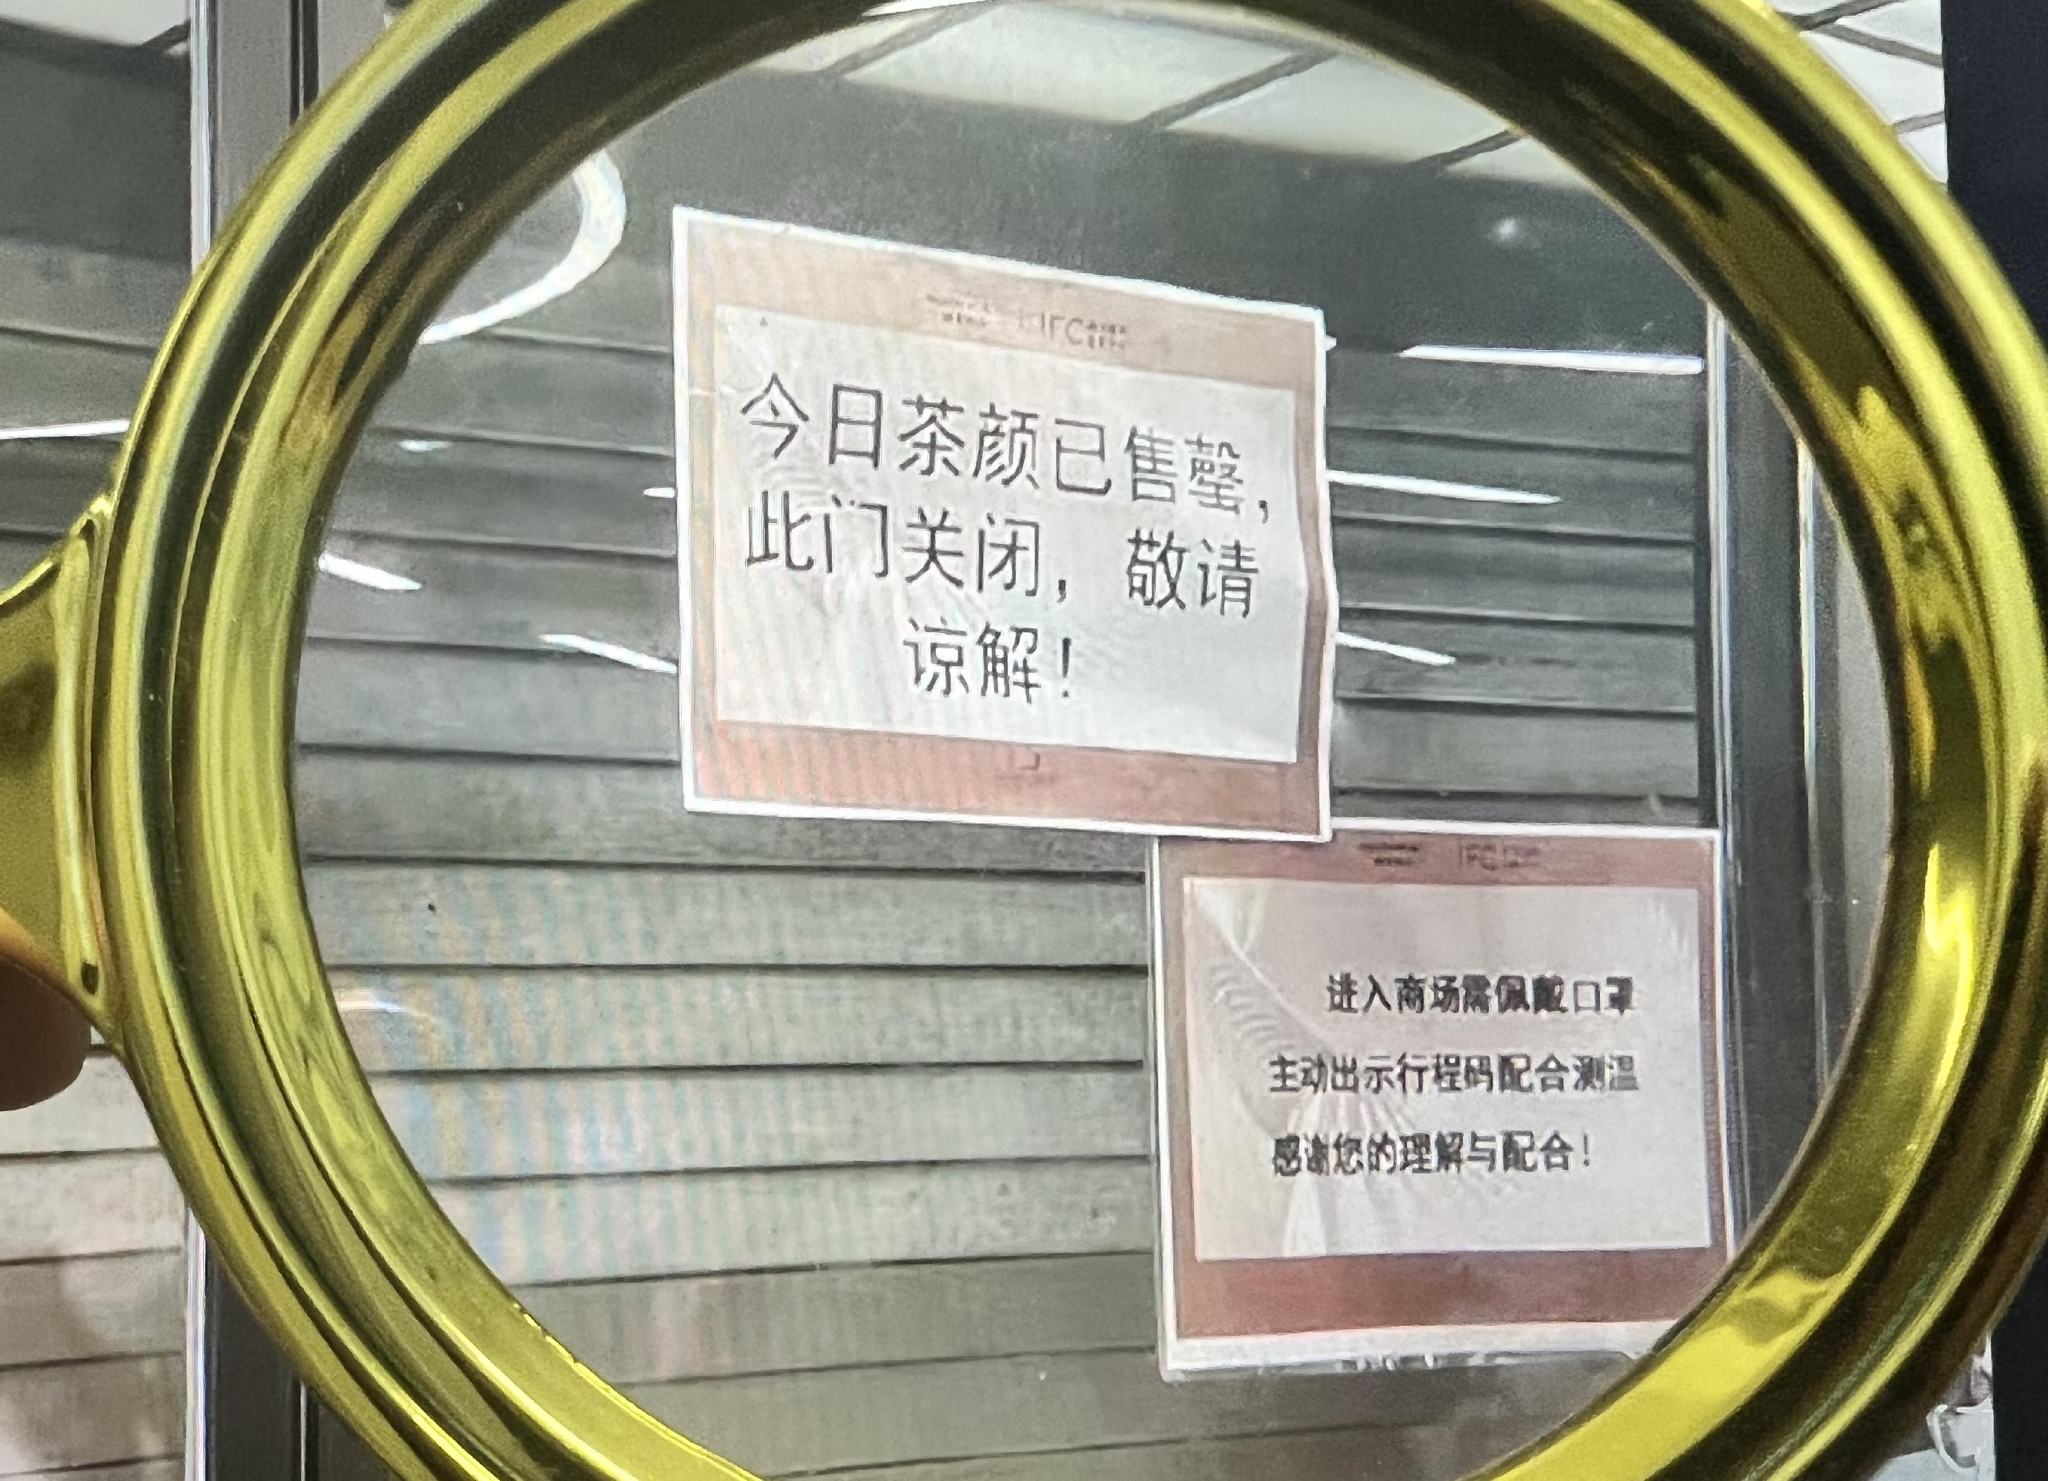 茶颜悦色南京一门店开业现“售罄”，回应称正协调沟通解决